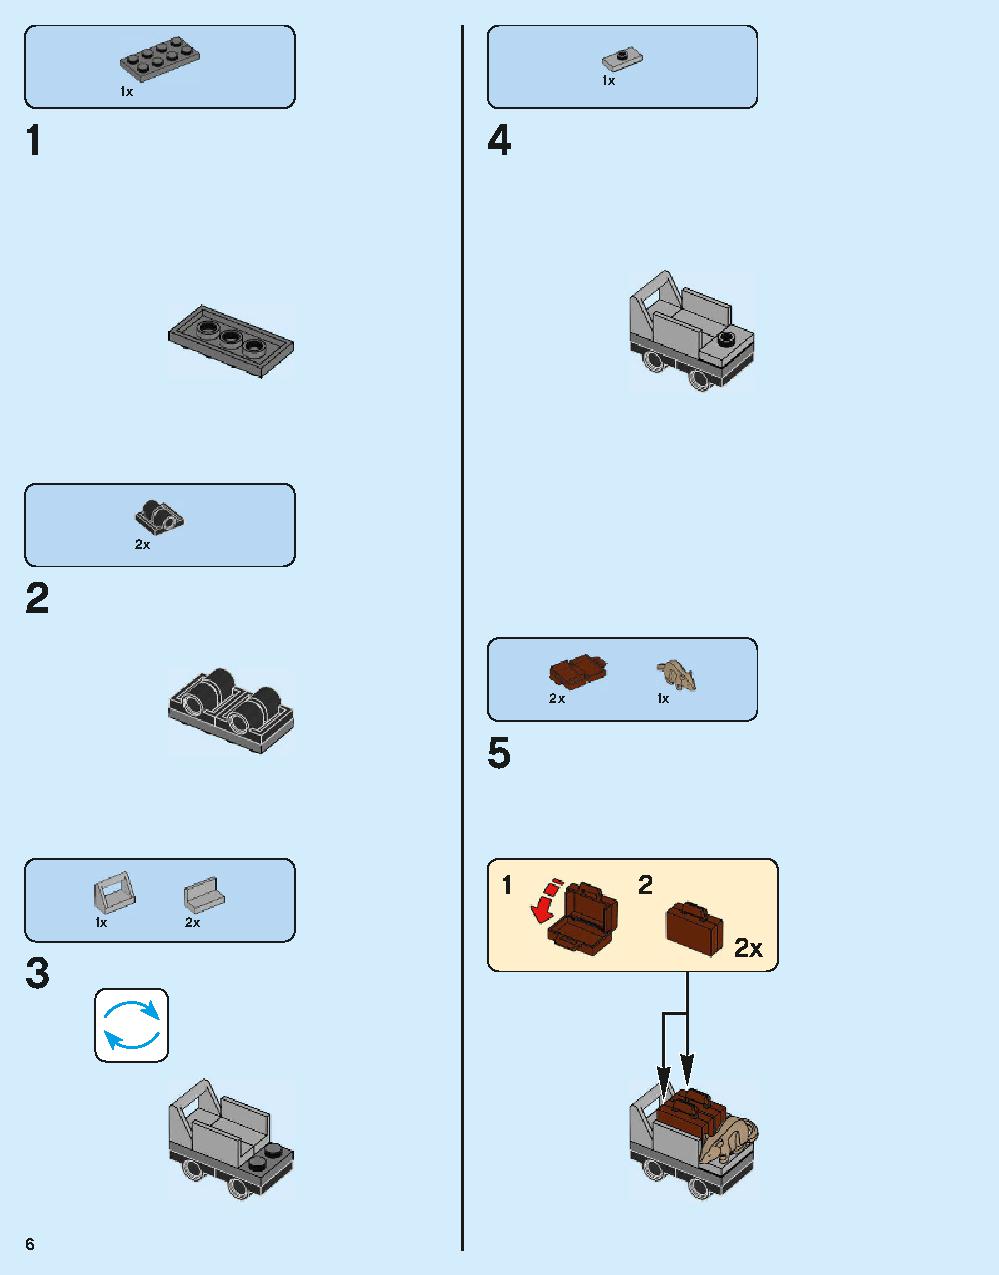 ホグワーツ特急 75955 レゴの商品情報 レゴの説明書・組立方法 6 page